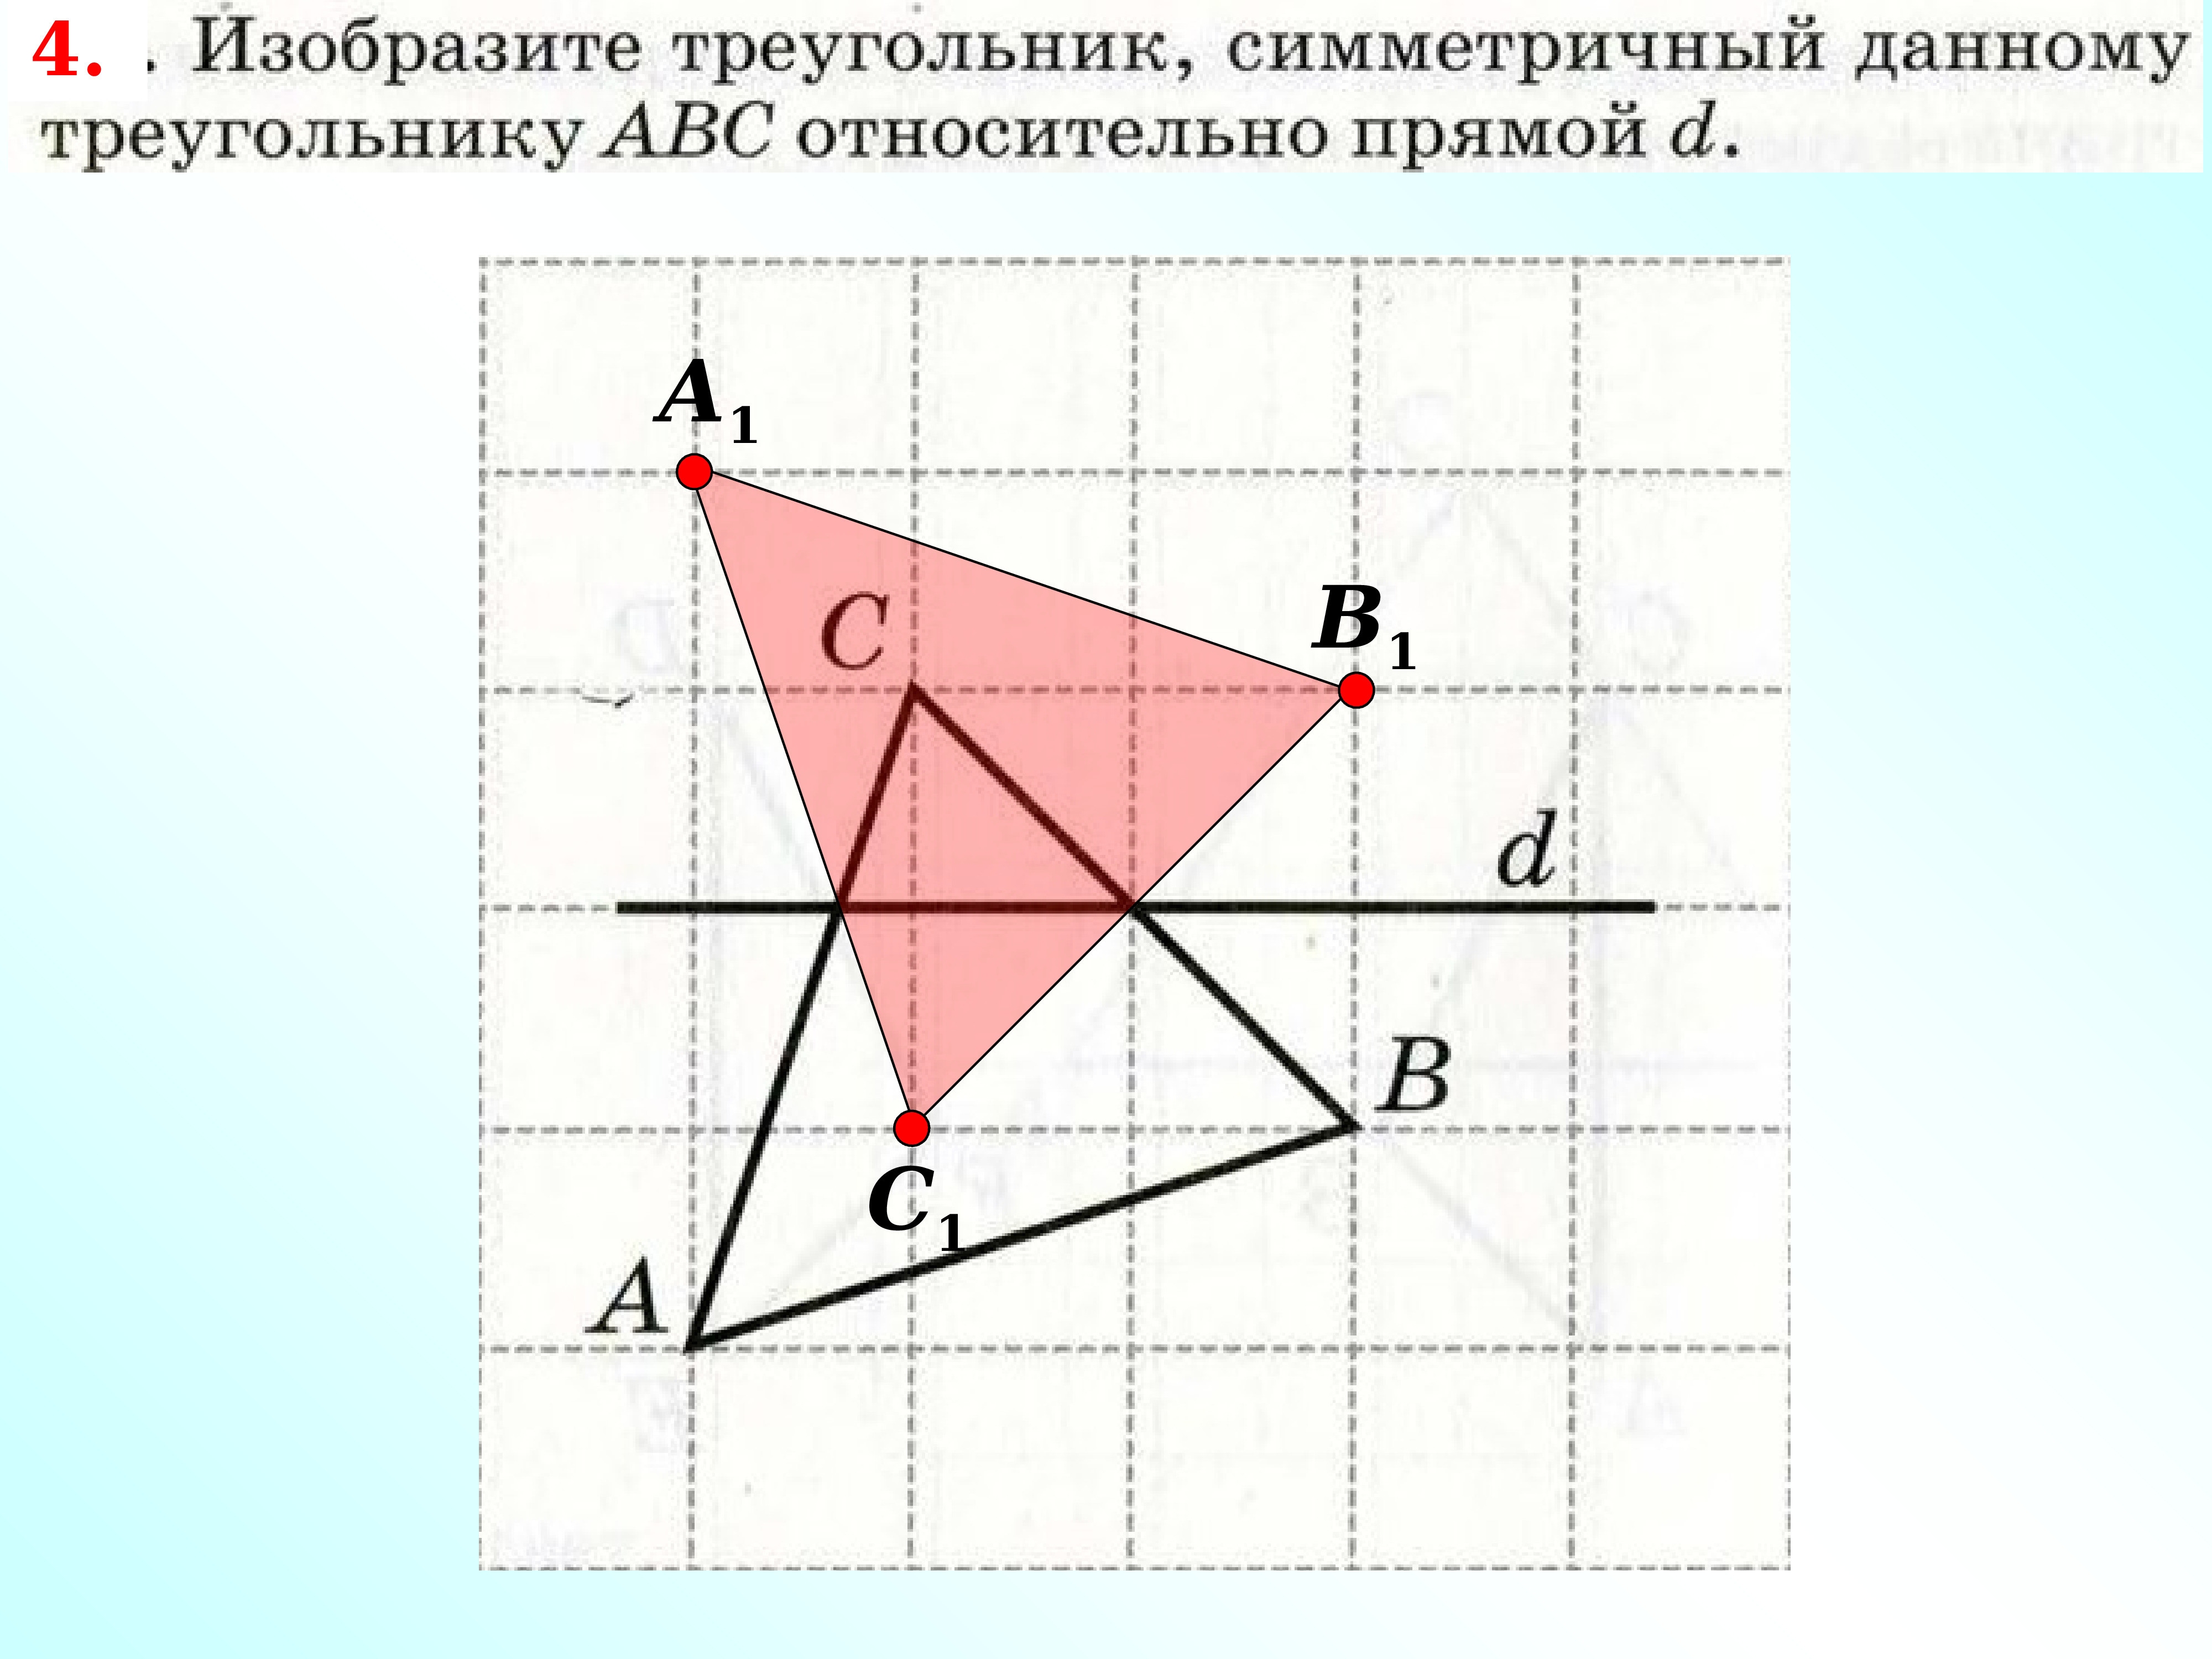 Треугольник, симметричный данному относительно прямой